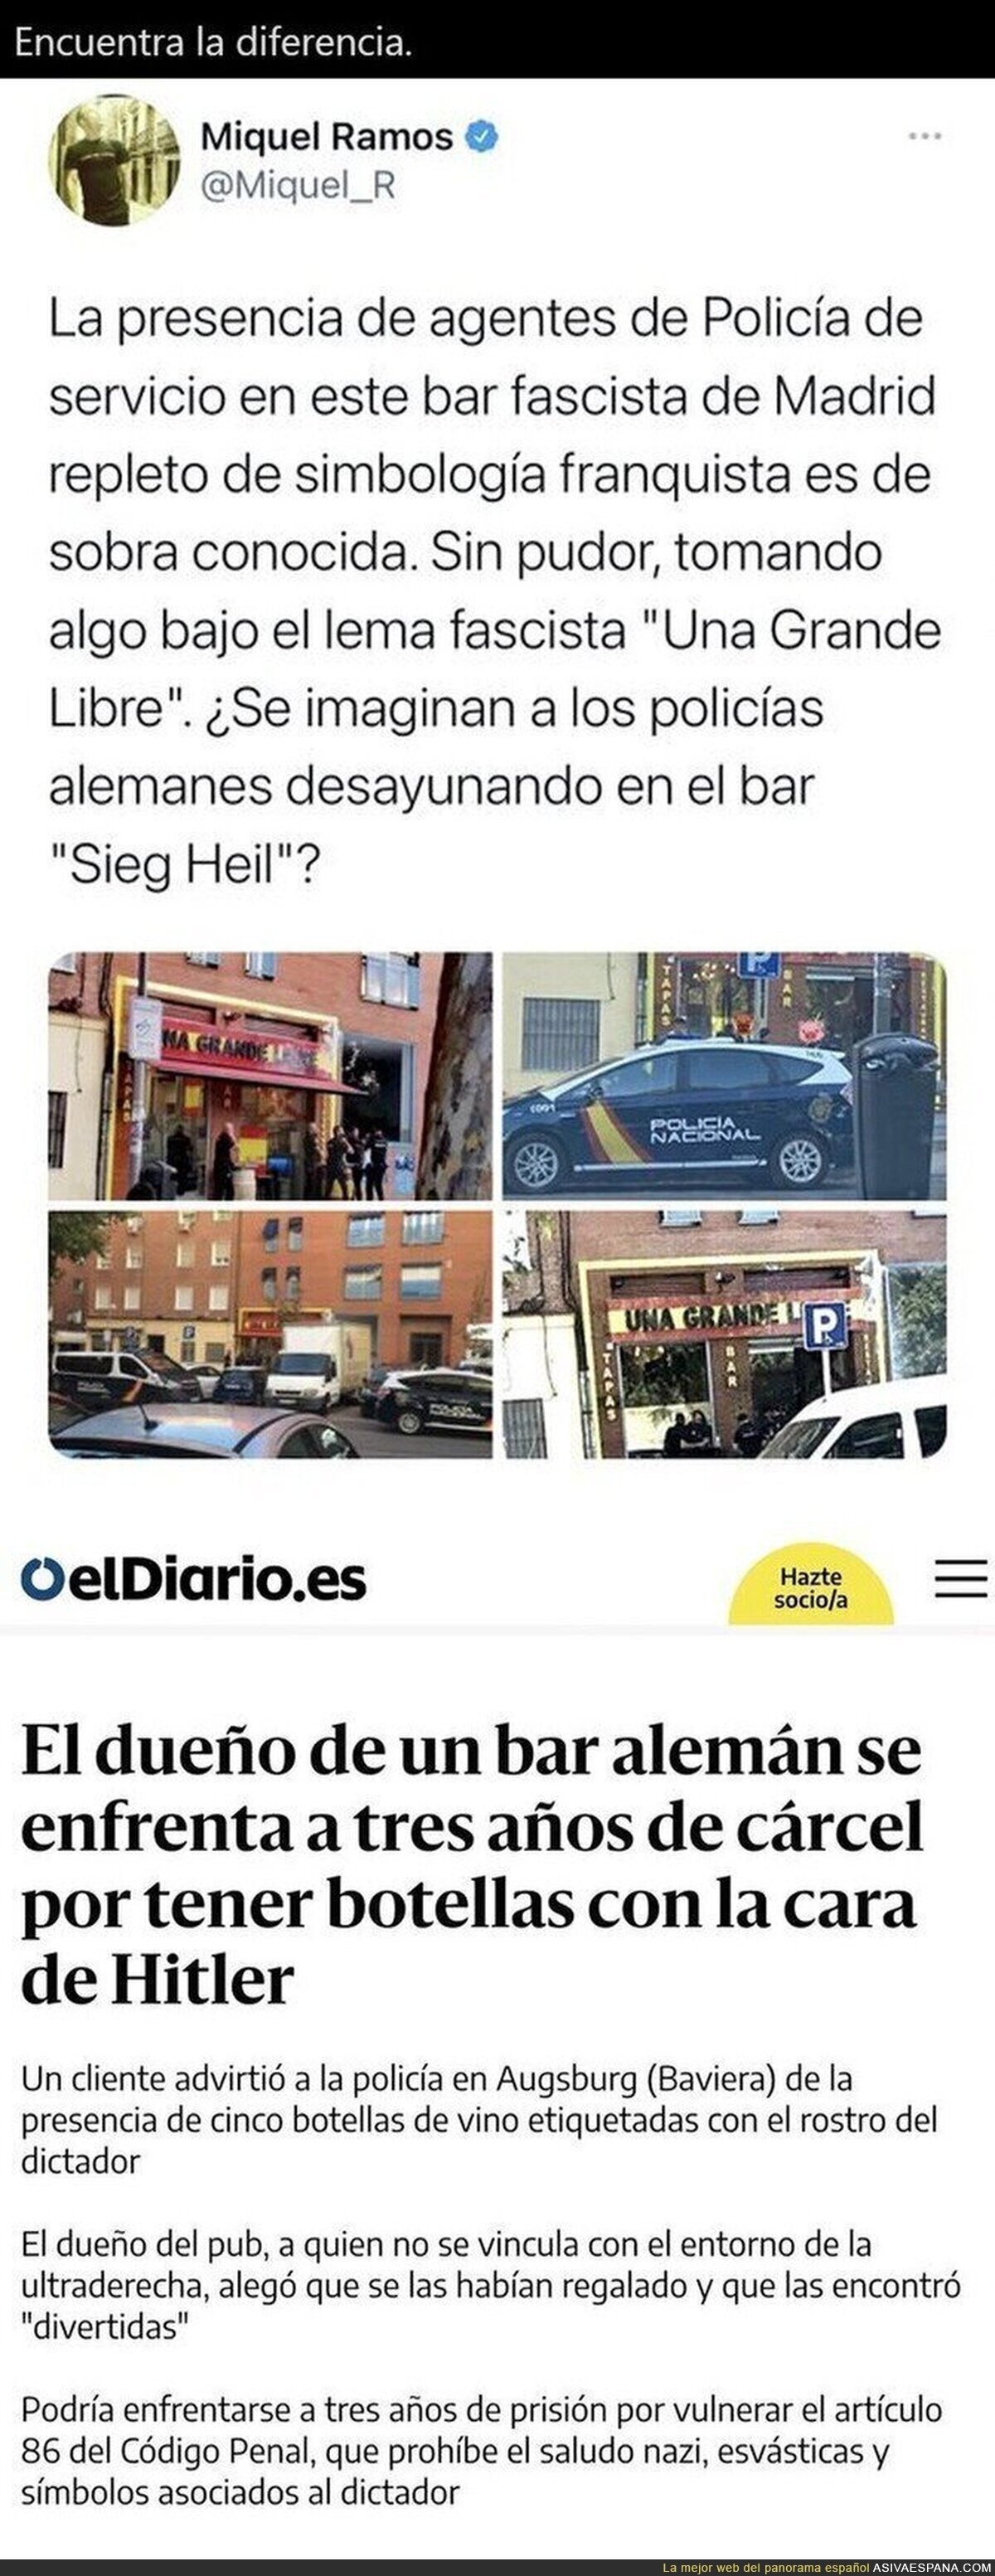 Grandes diferencias entre Alemania y España cuando en un bar hay simbología fascista